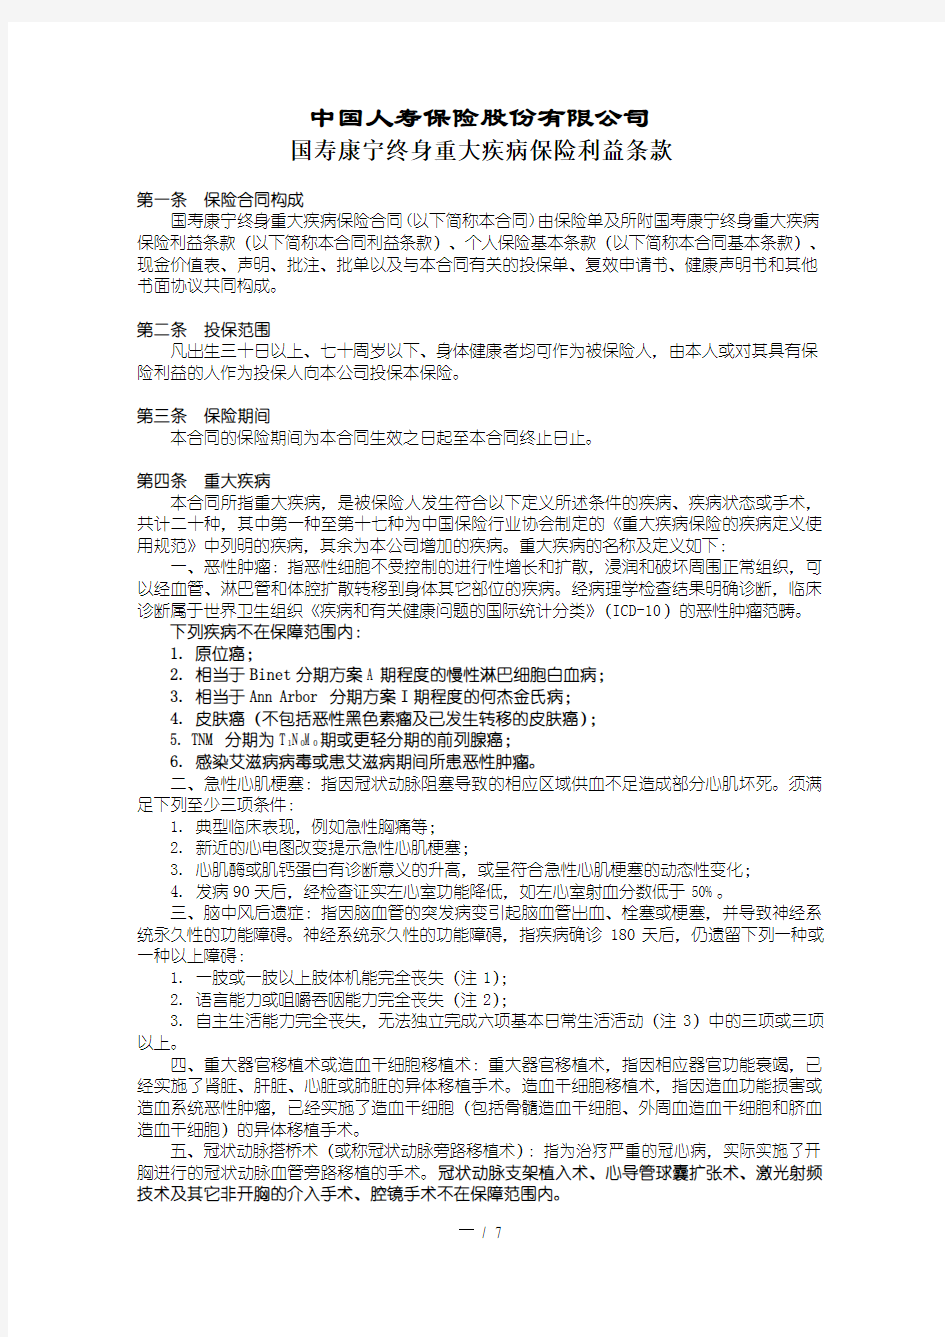 国寿康宁终身重大疾病保险利益条款-2003.